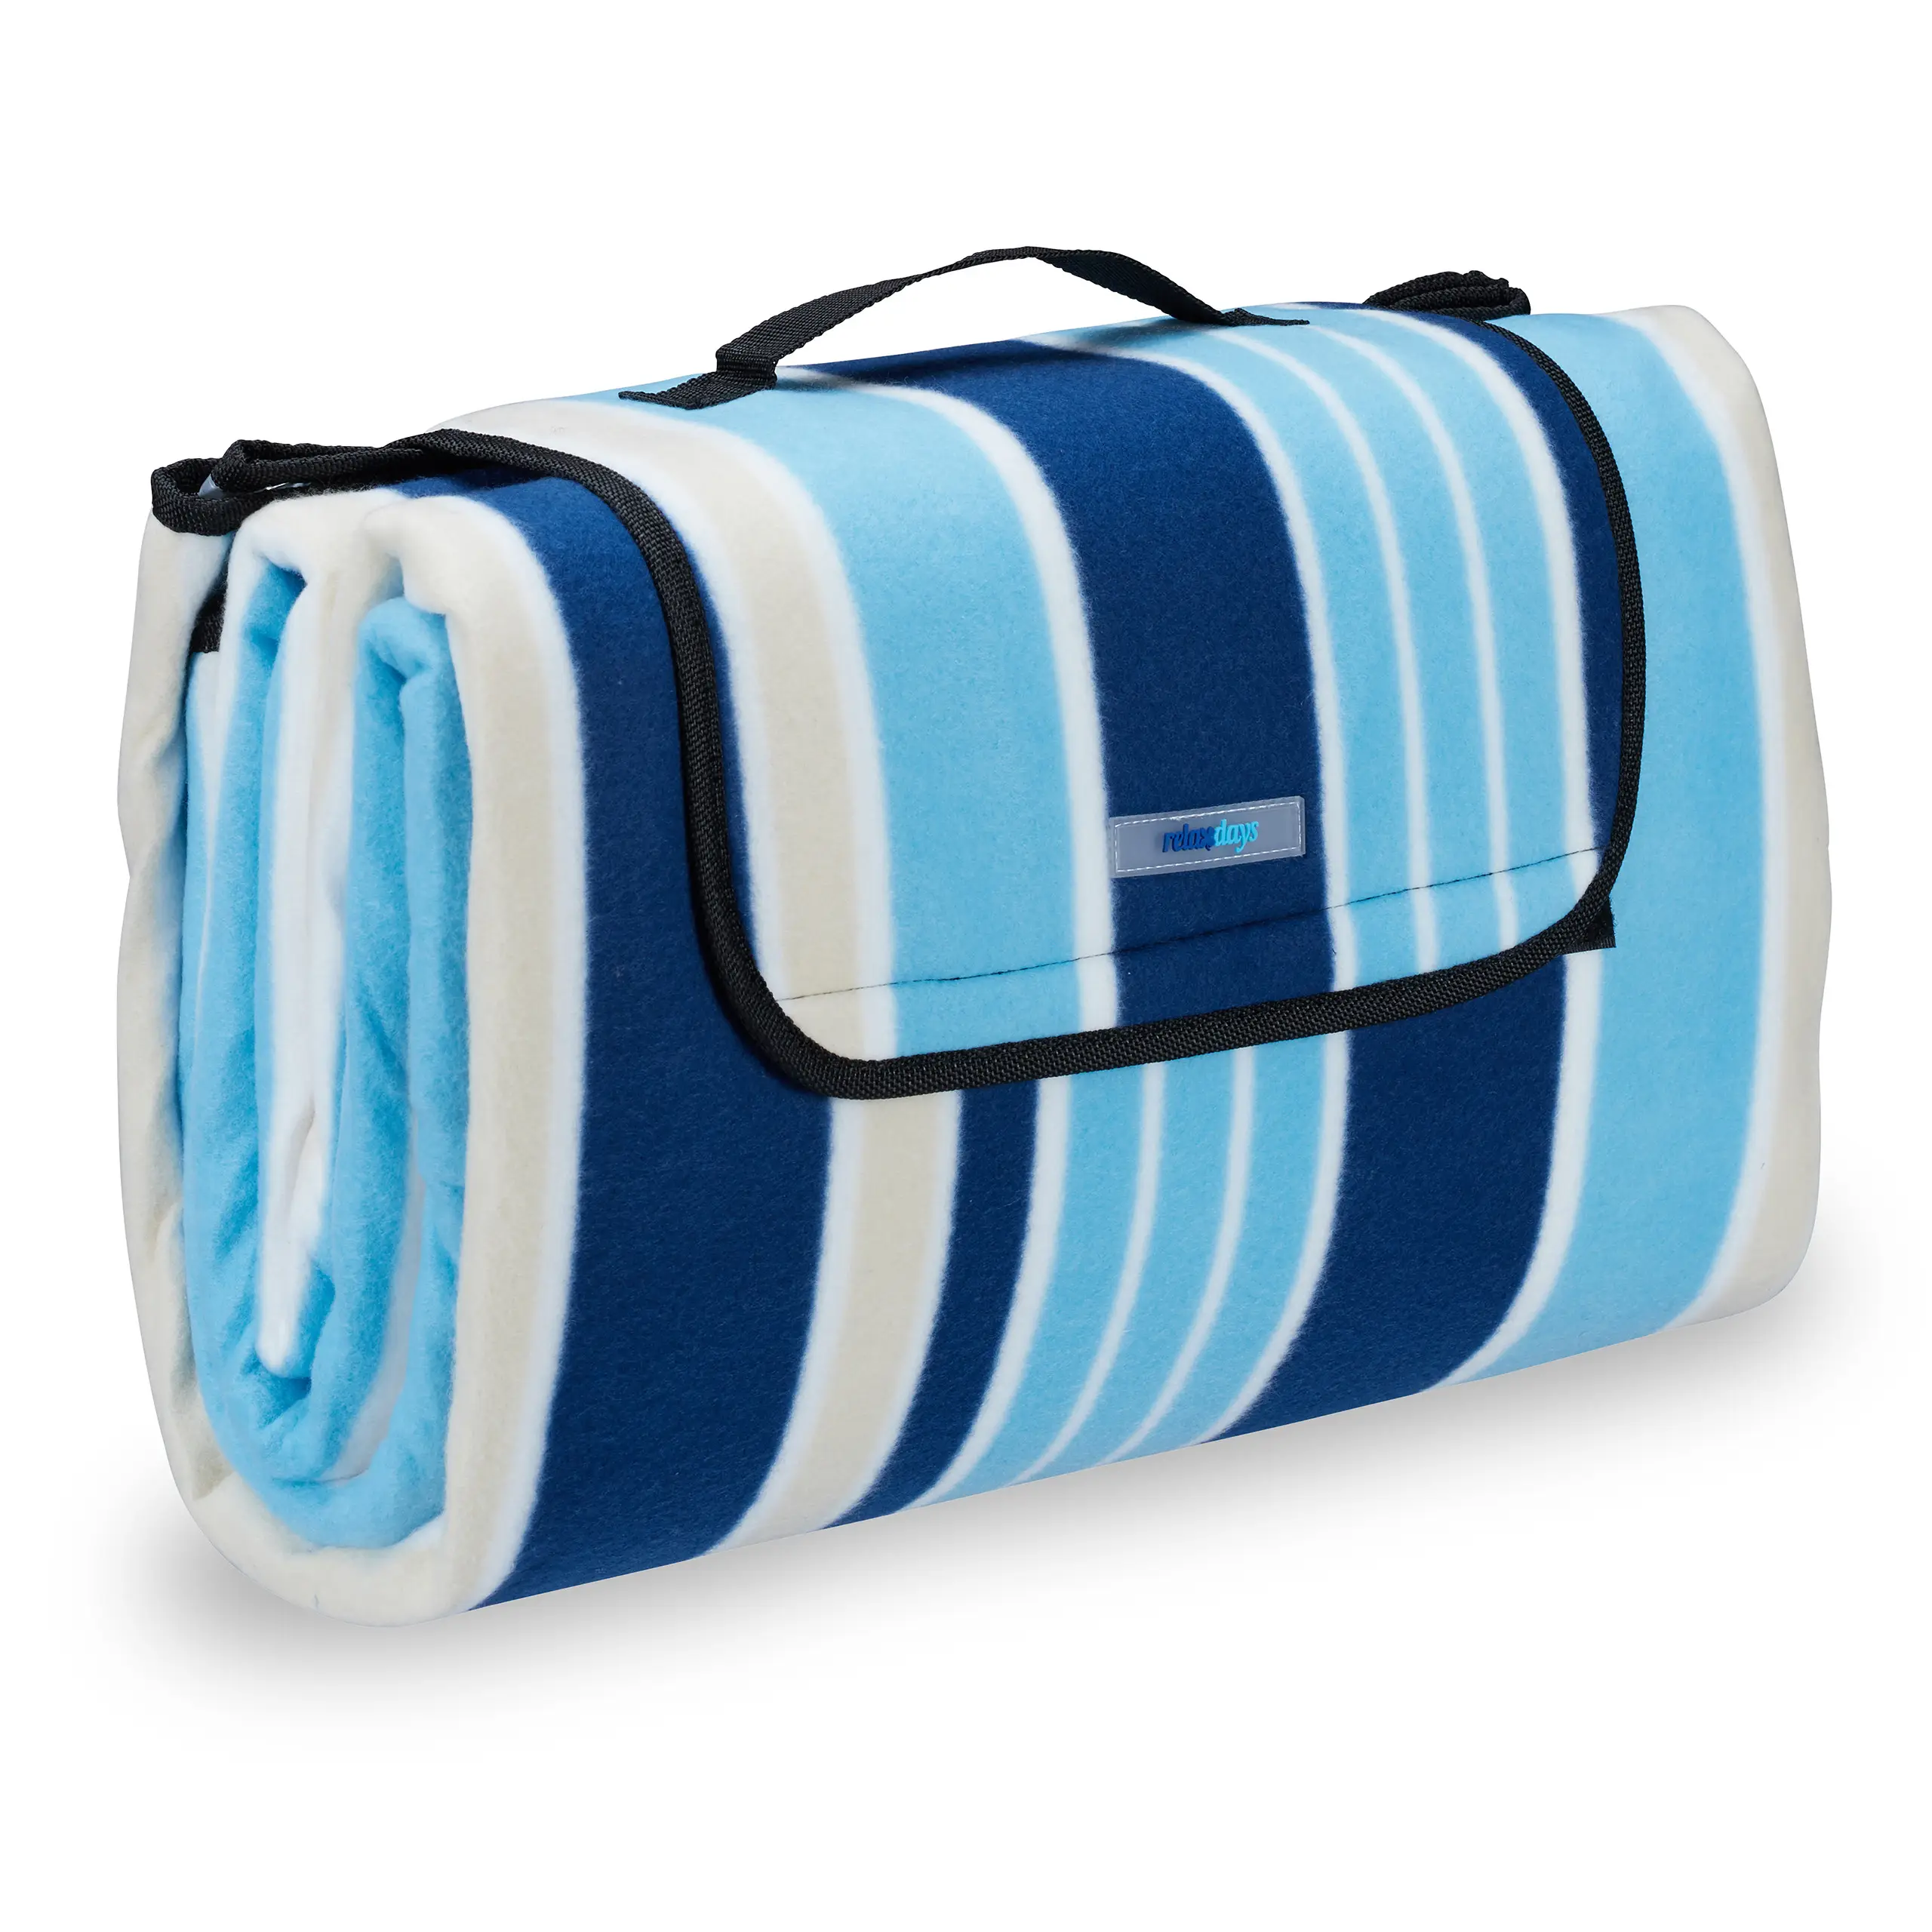 Picknickdecke blau-weiße Streifen